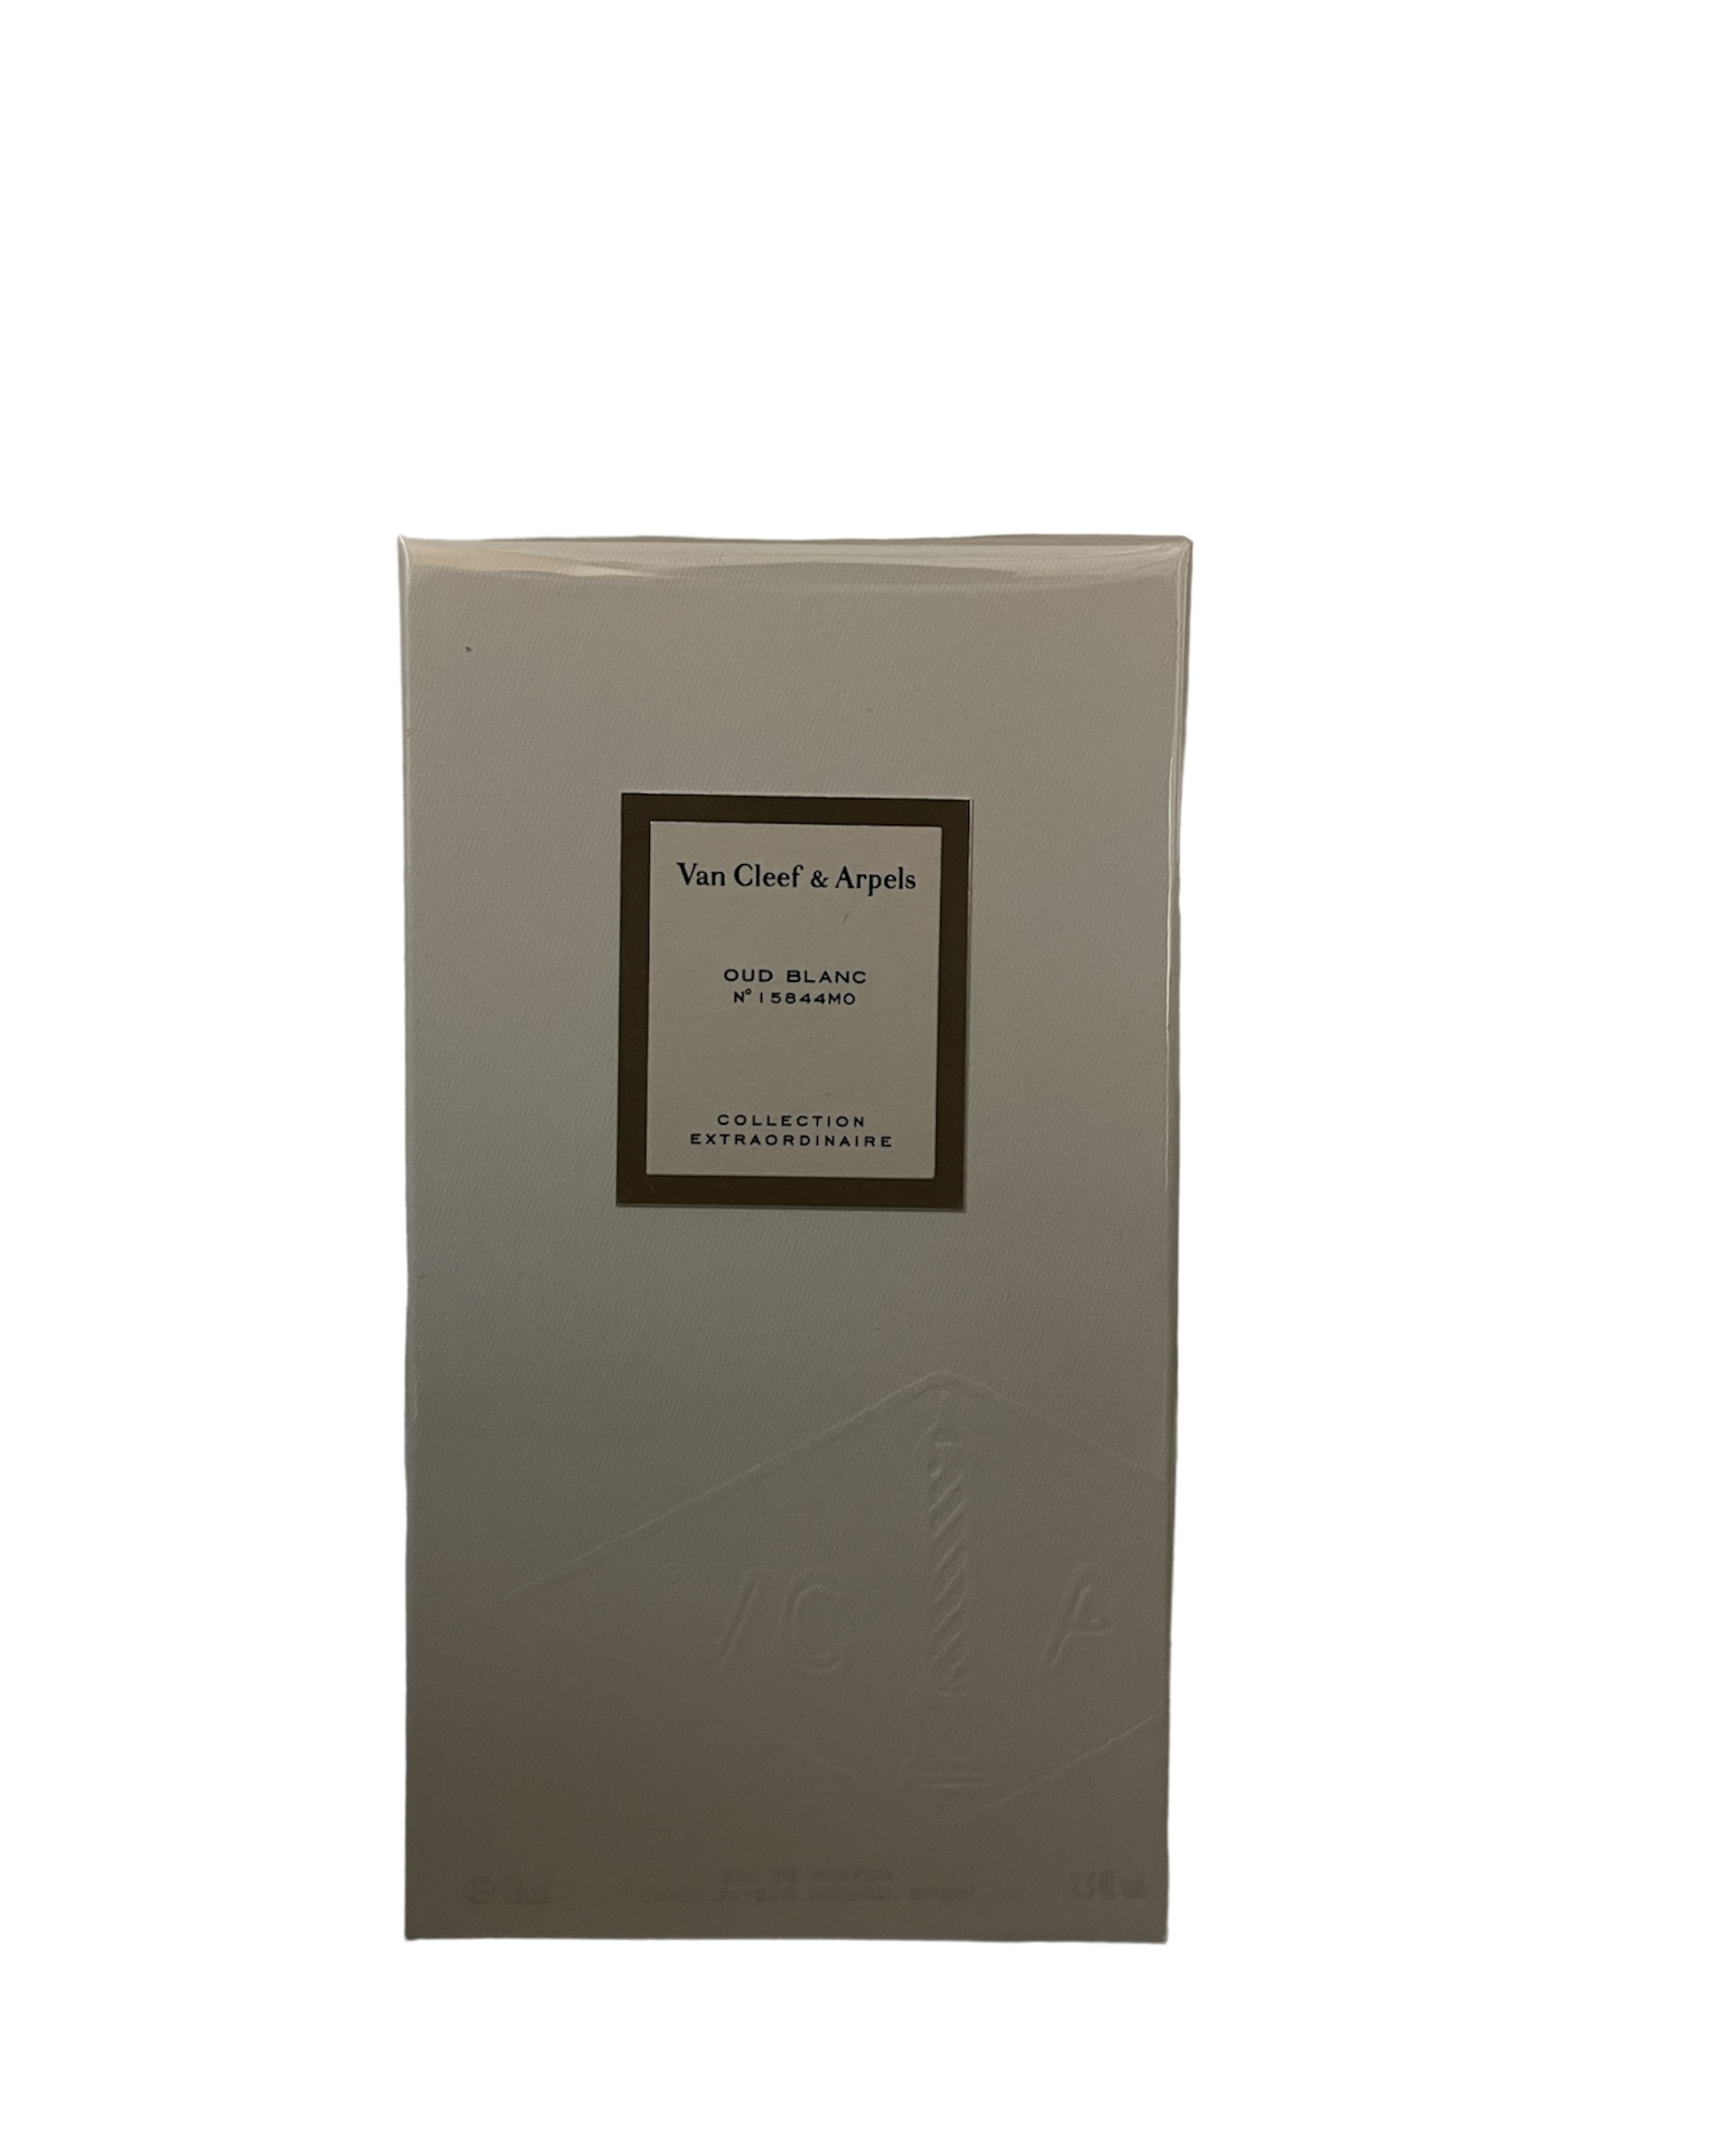 Van Cleef & Arpels Collection Extraordinaire Oud Blanc Eau de Parfum 75